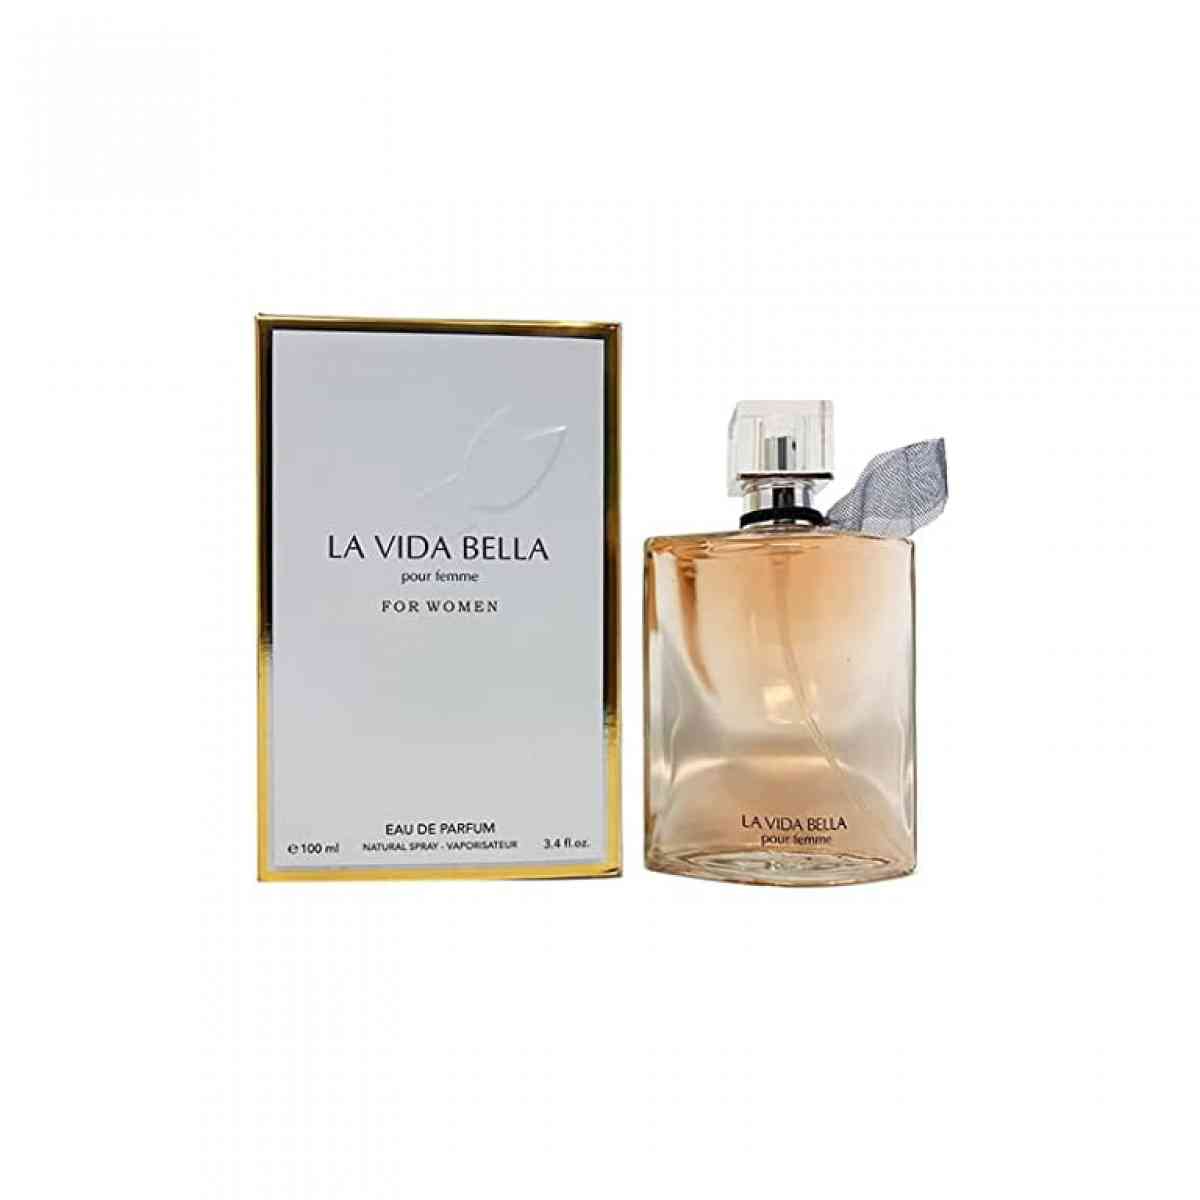 New (Sealed) La Vida Bella Eau De Parfum Spray 3.4 oz